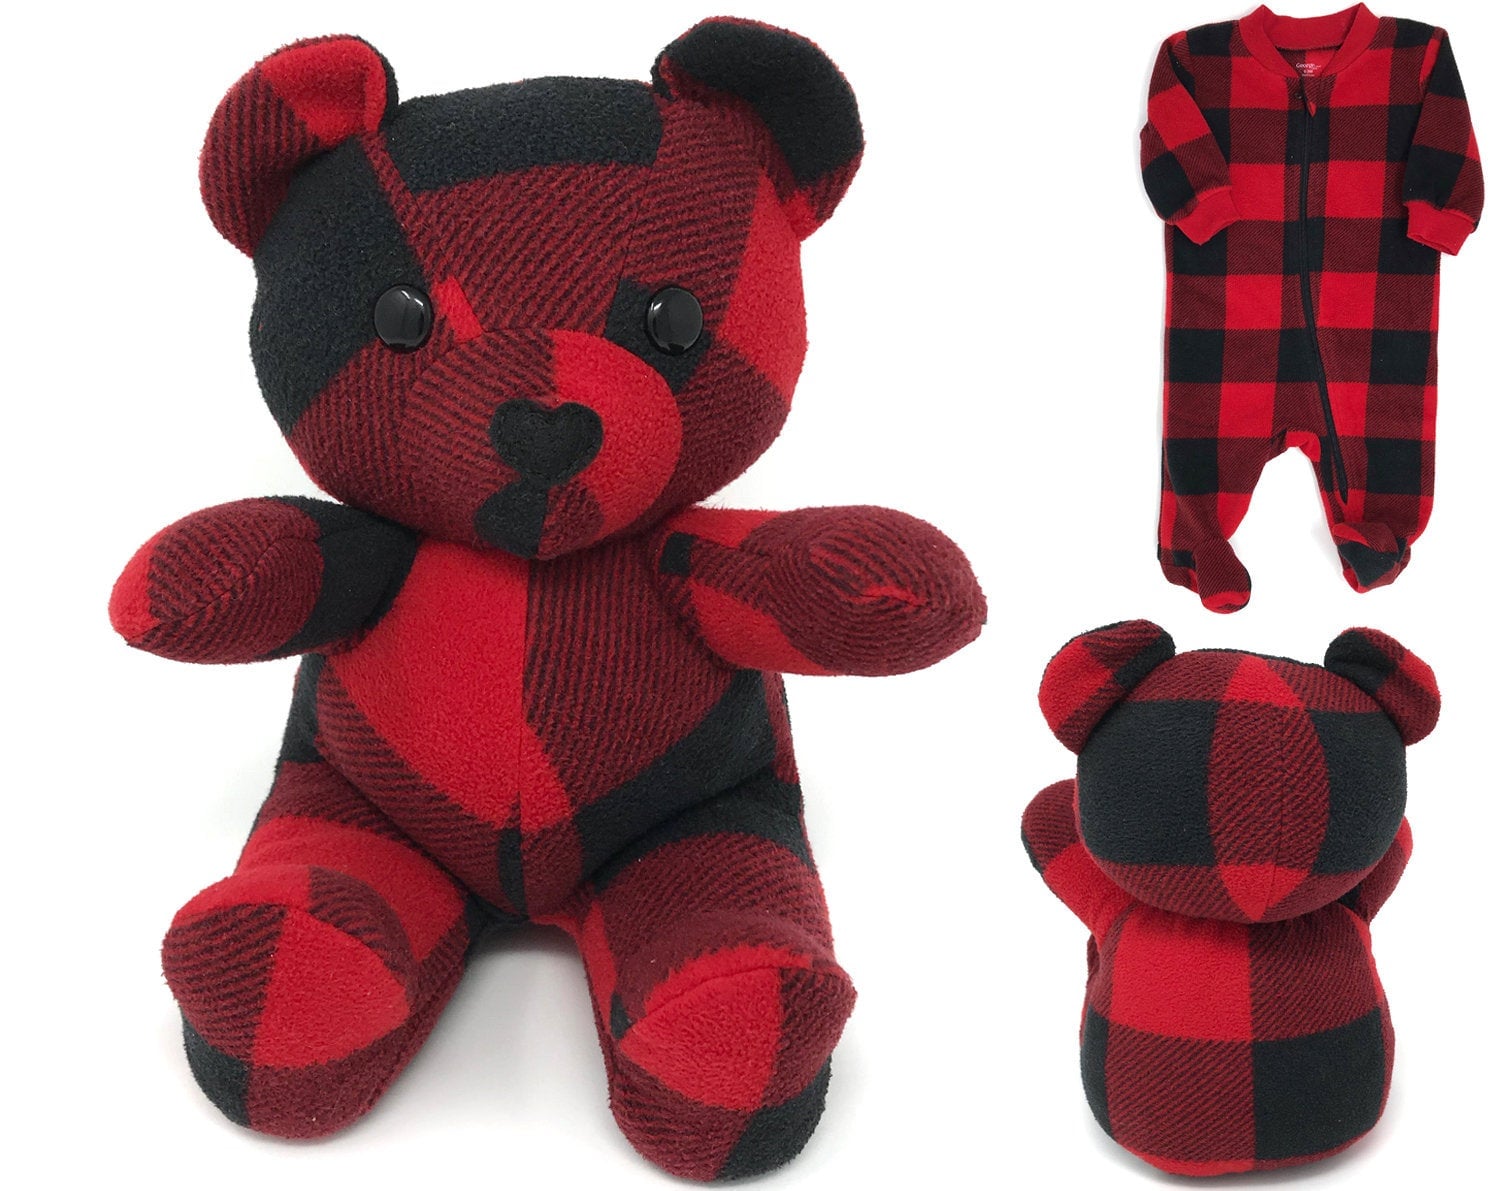 onesie into teddy bear